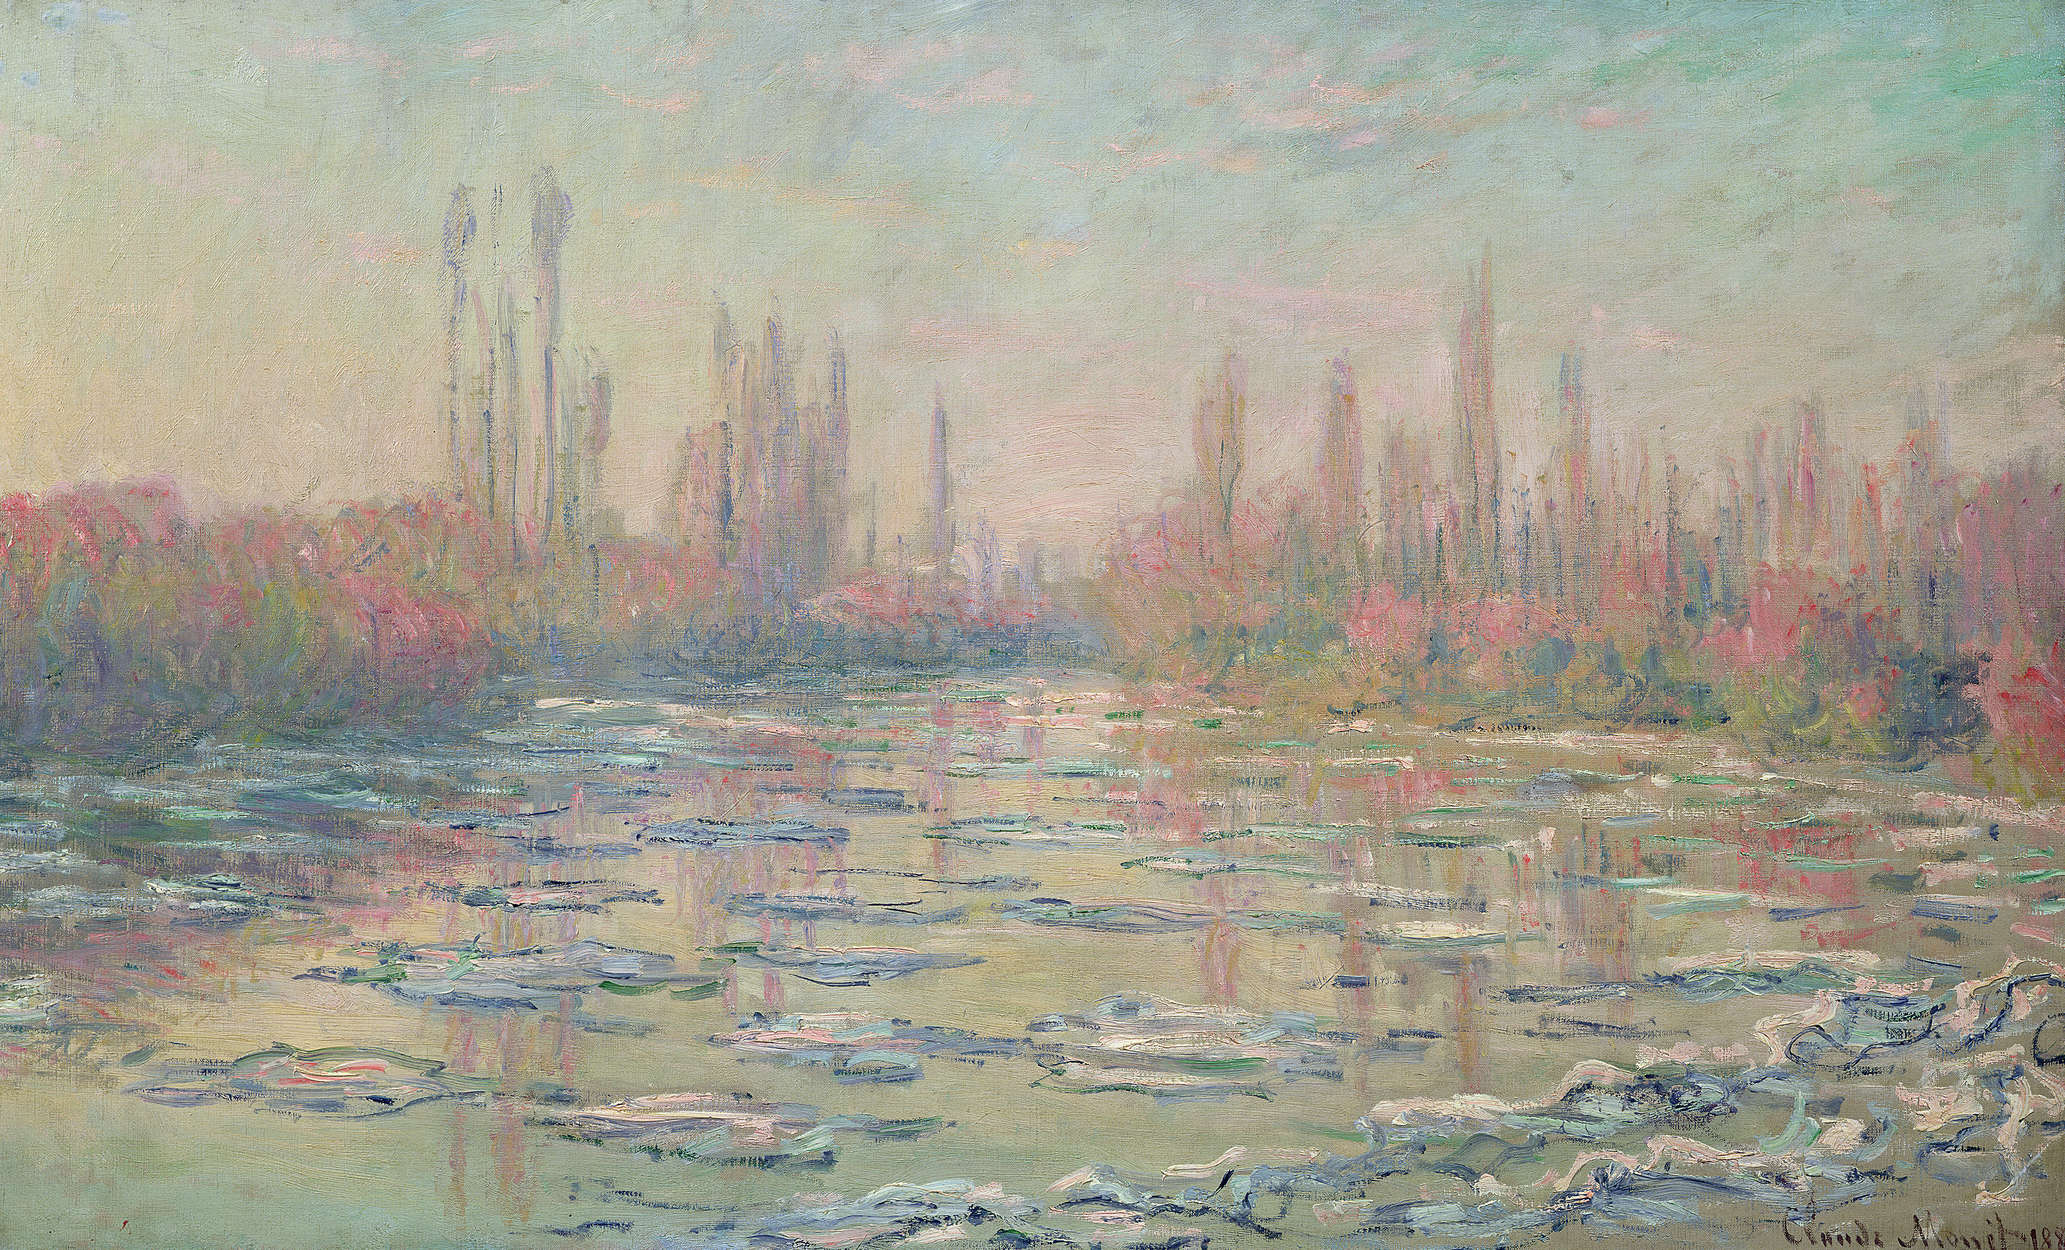             Muurschildering "De dooi op de Seine bij Vetheuil" van Claude Monet
        